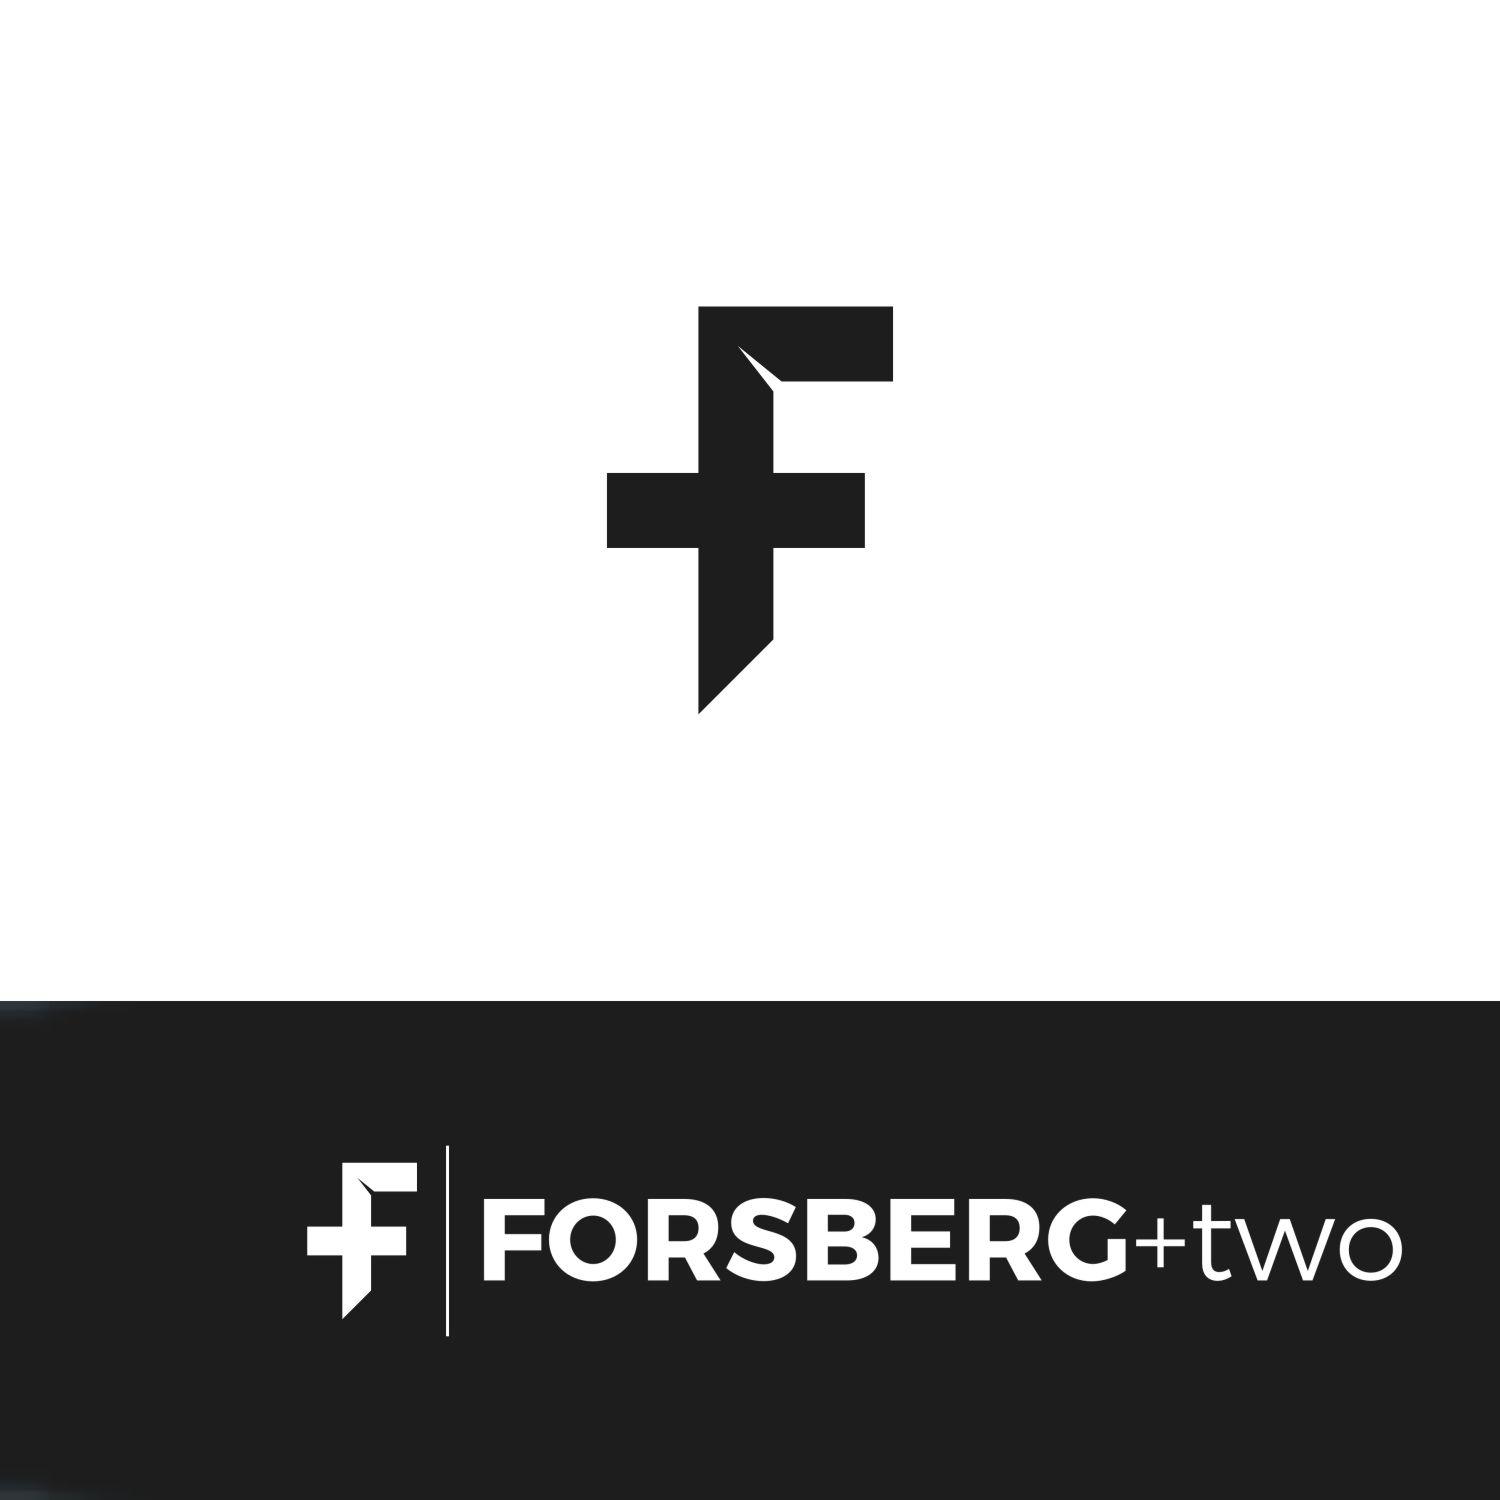 Two F Logo - Modern, Upmarket, Software Logo Design for Just a logomark/symbol ...